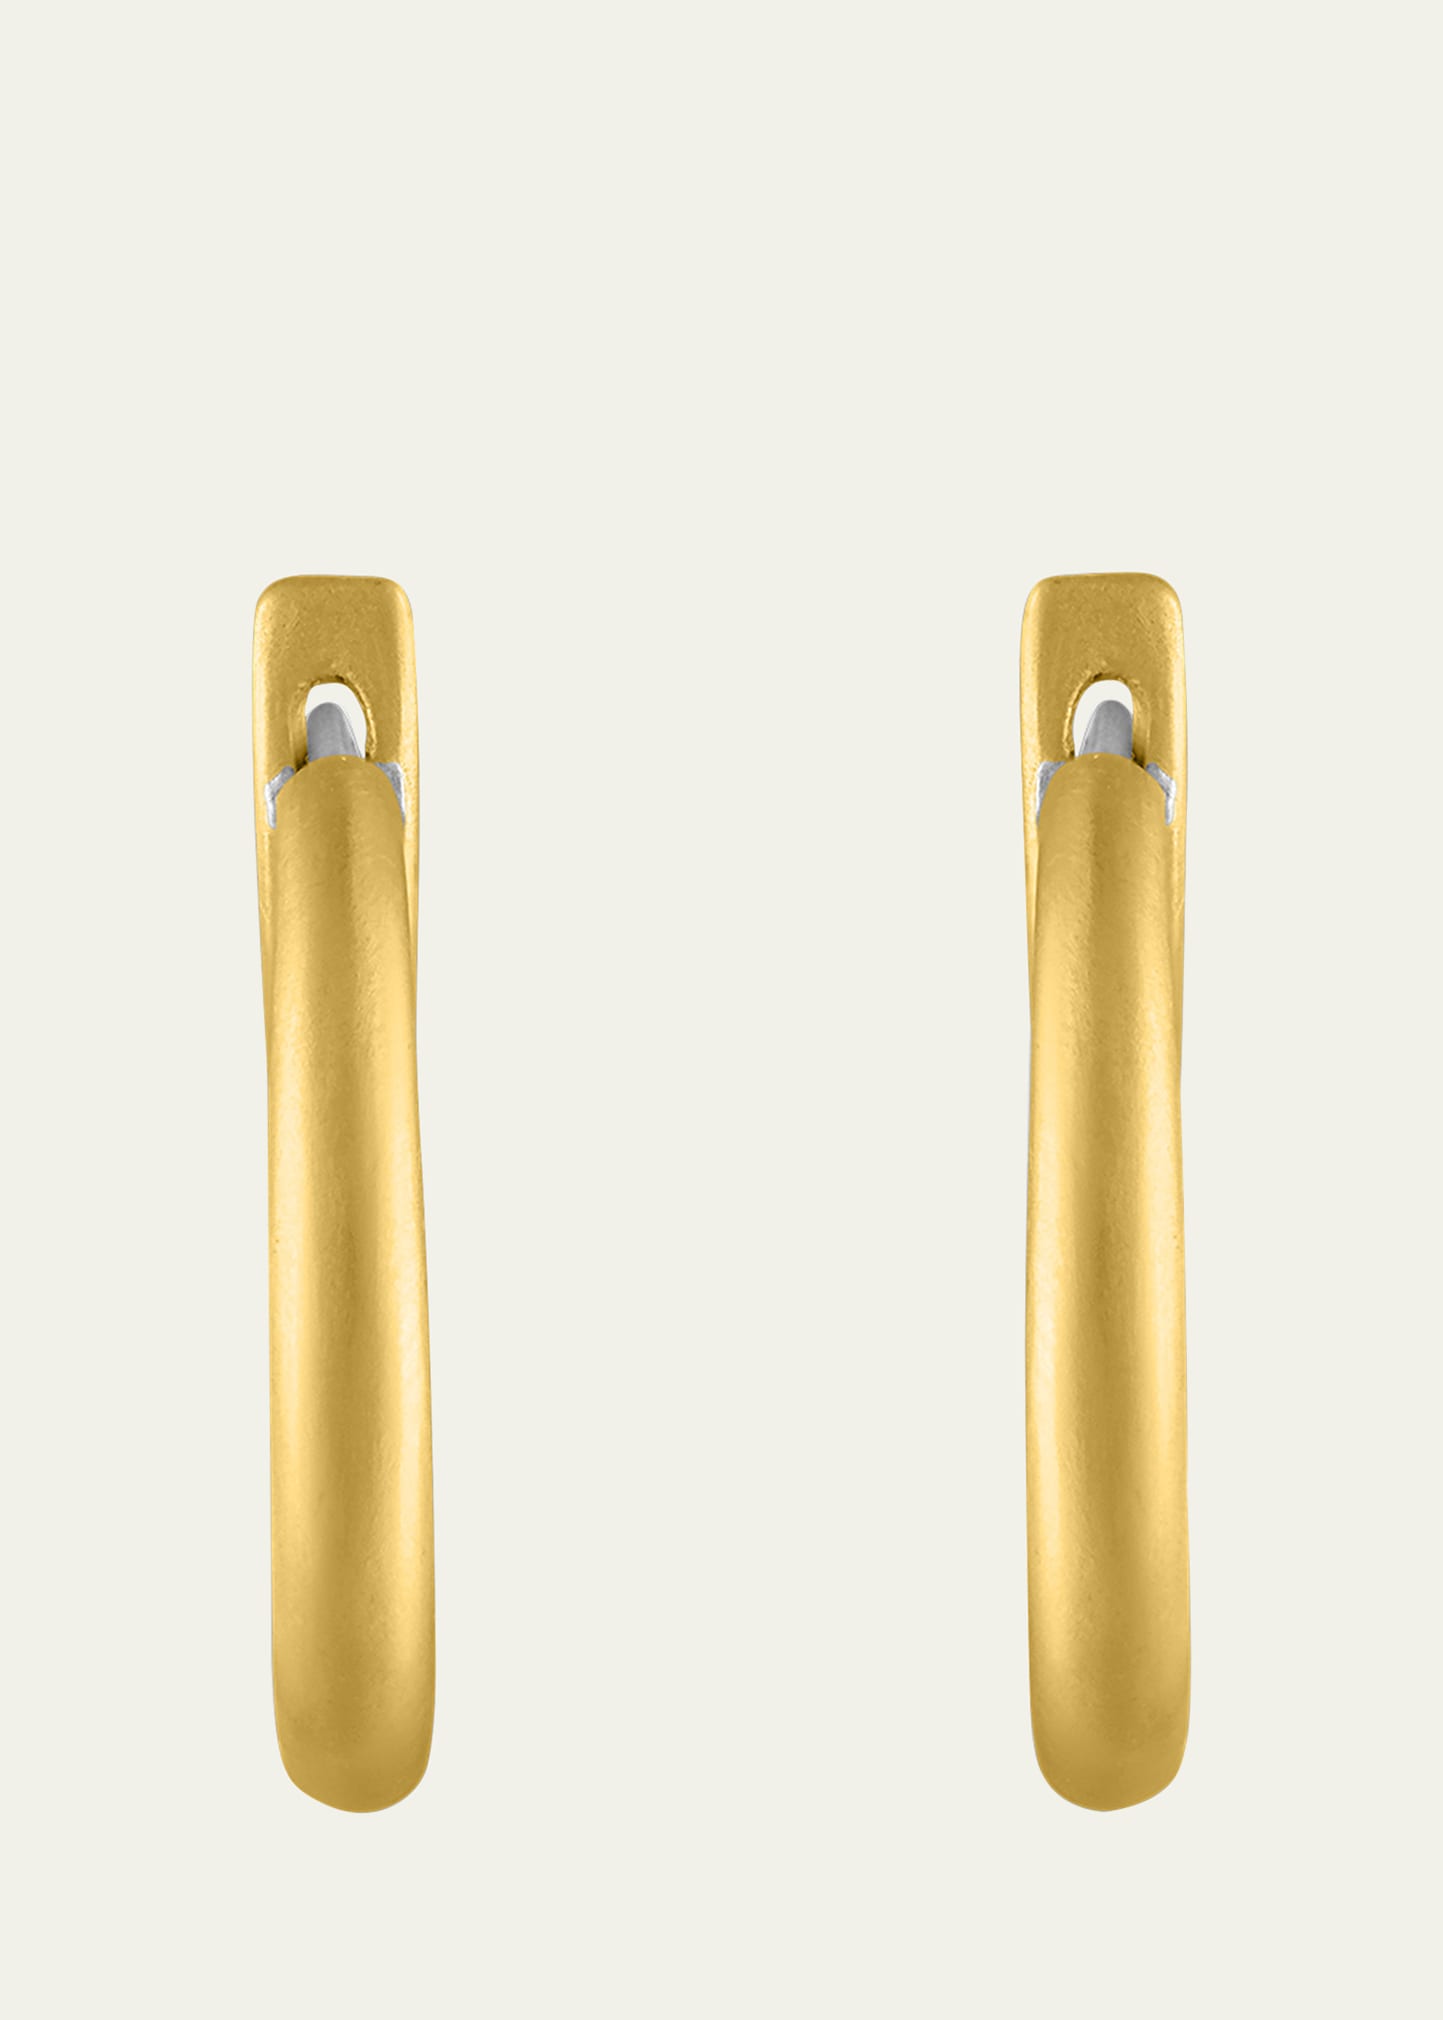 16mm Hinged Hoop and Hook Earrings in 22K Gold